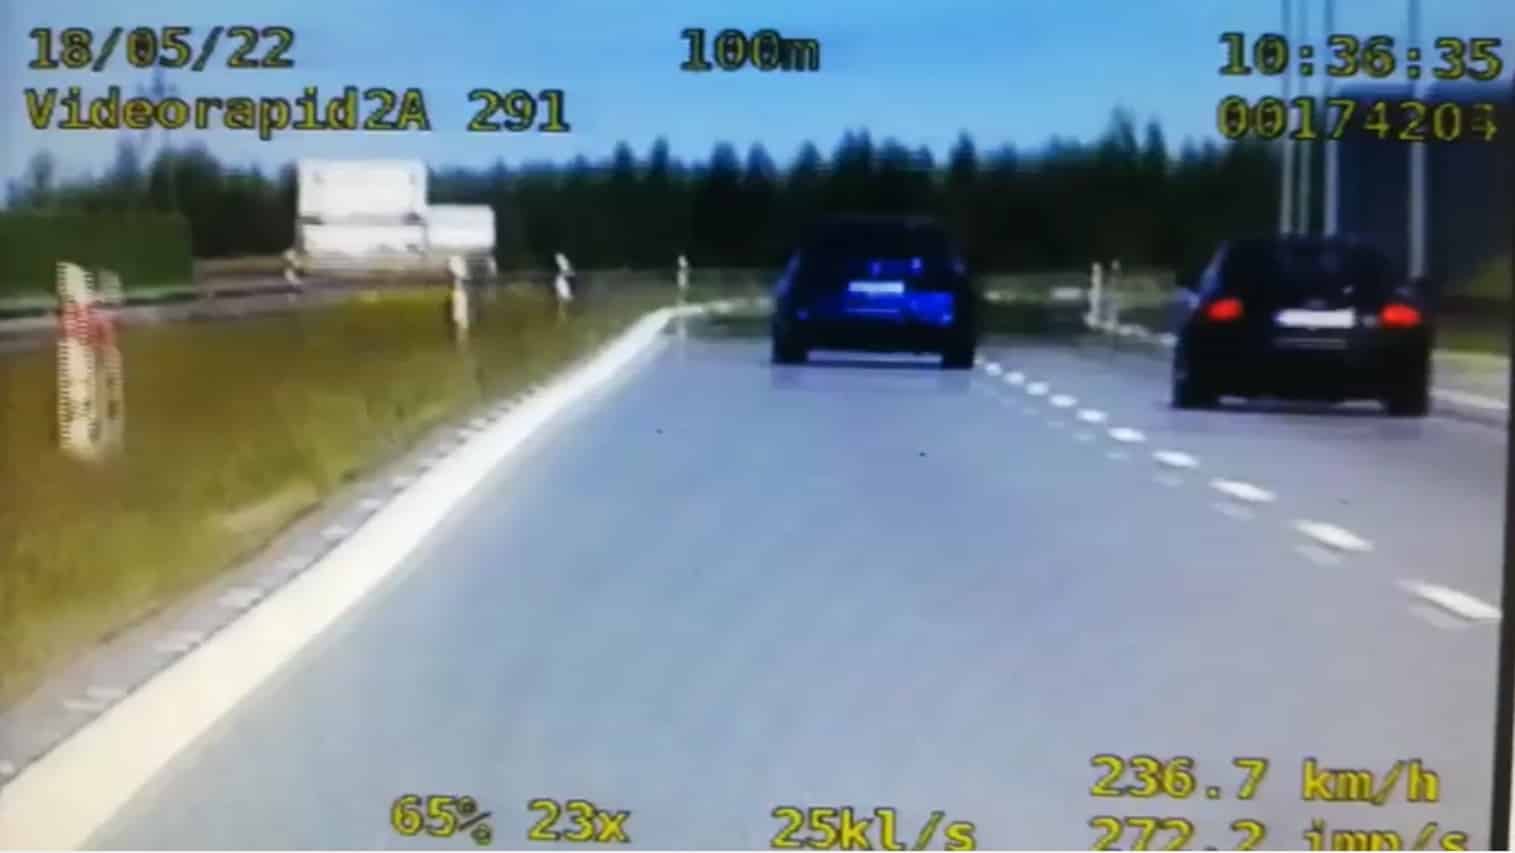 Kierowca BMW "leciał" 237 km/h na S7. Jak wysoki mandat dostał? kontrola drogowa Olsztyn, Wiadomości